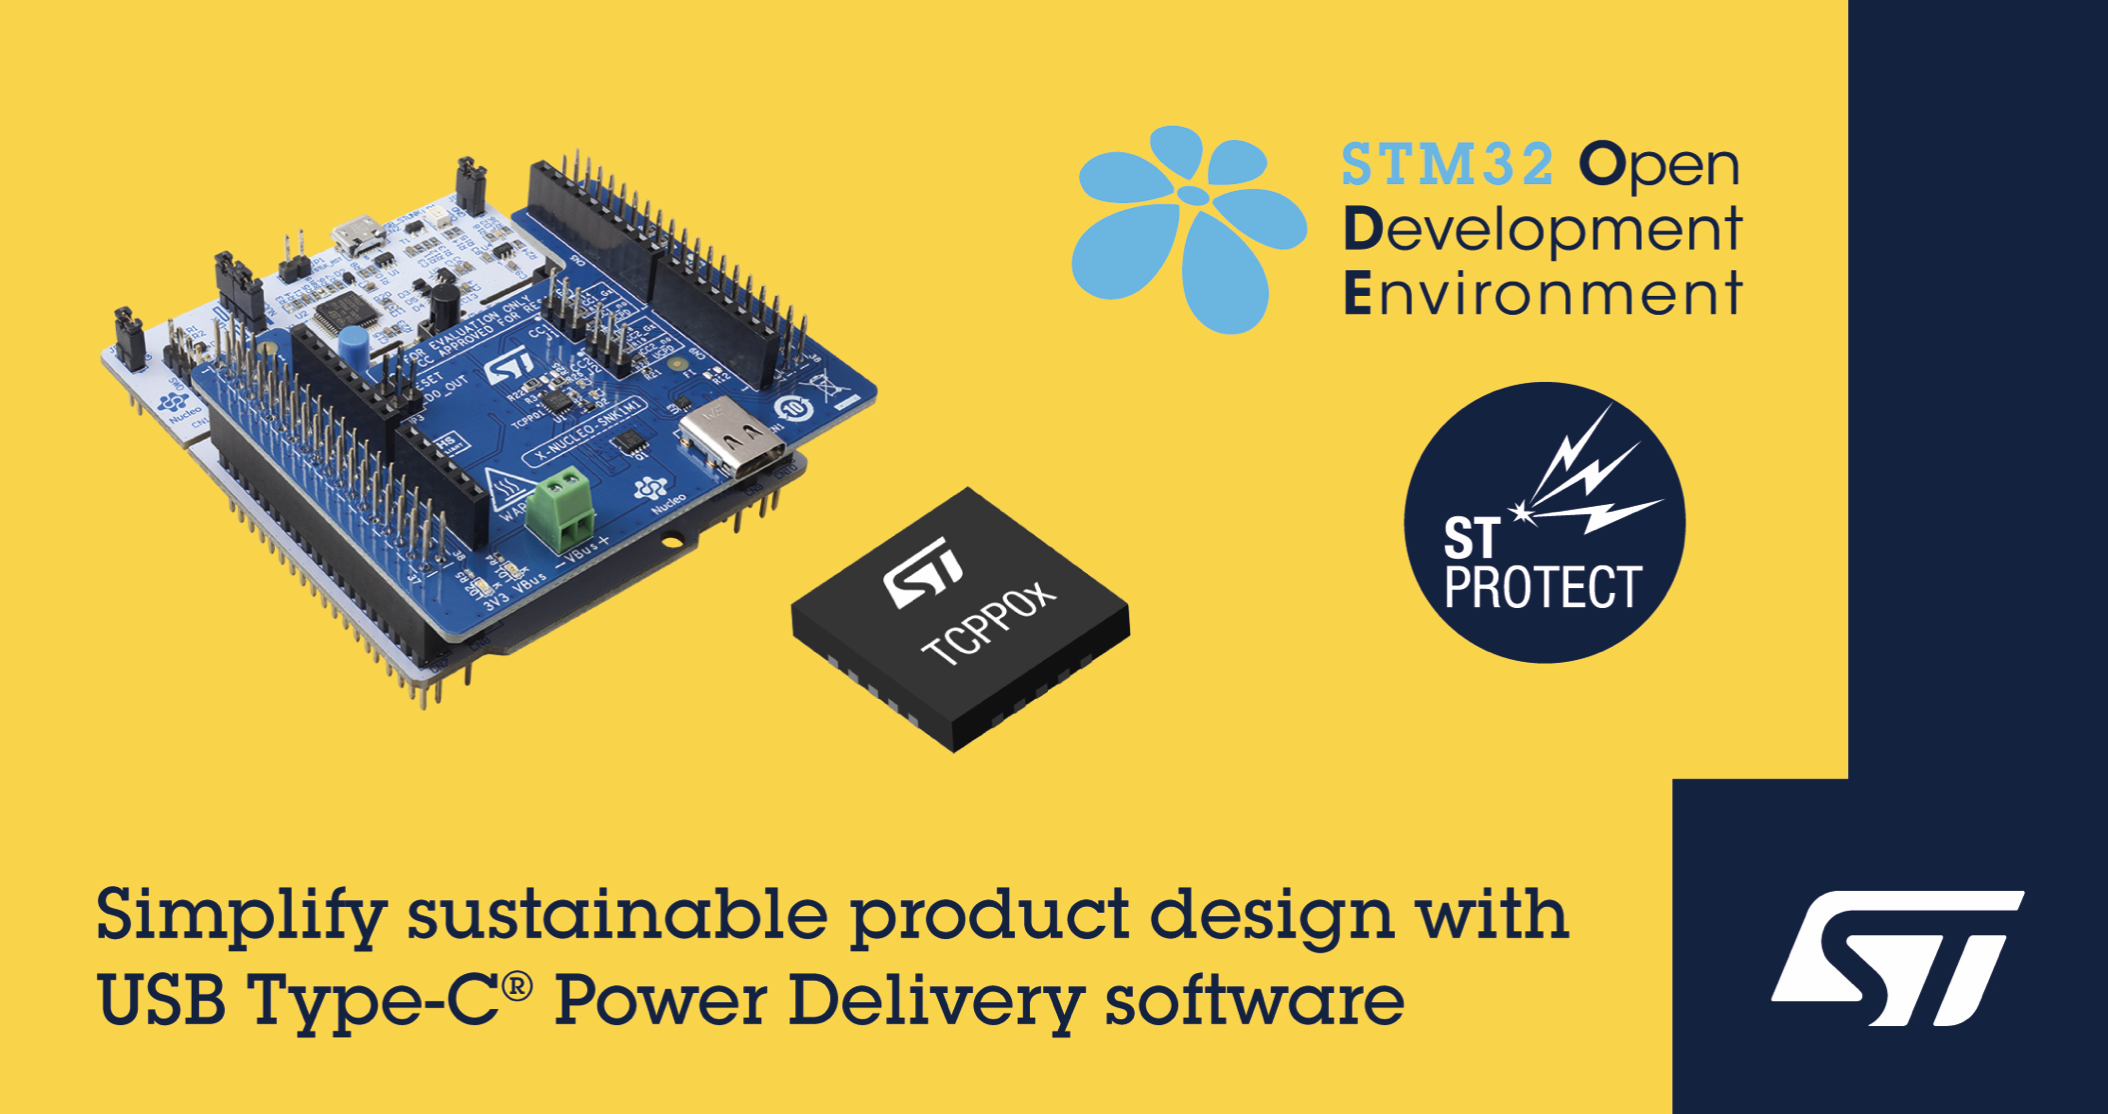 意法半导体发布支持STM32 微控制器的 USB Type-C® Power Delivery 软件，简化可持续产品设计